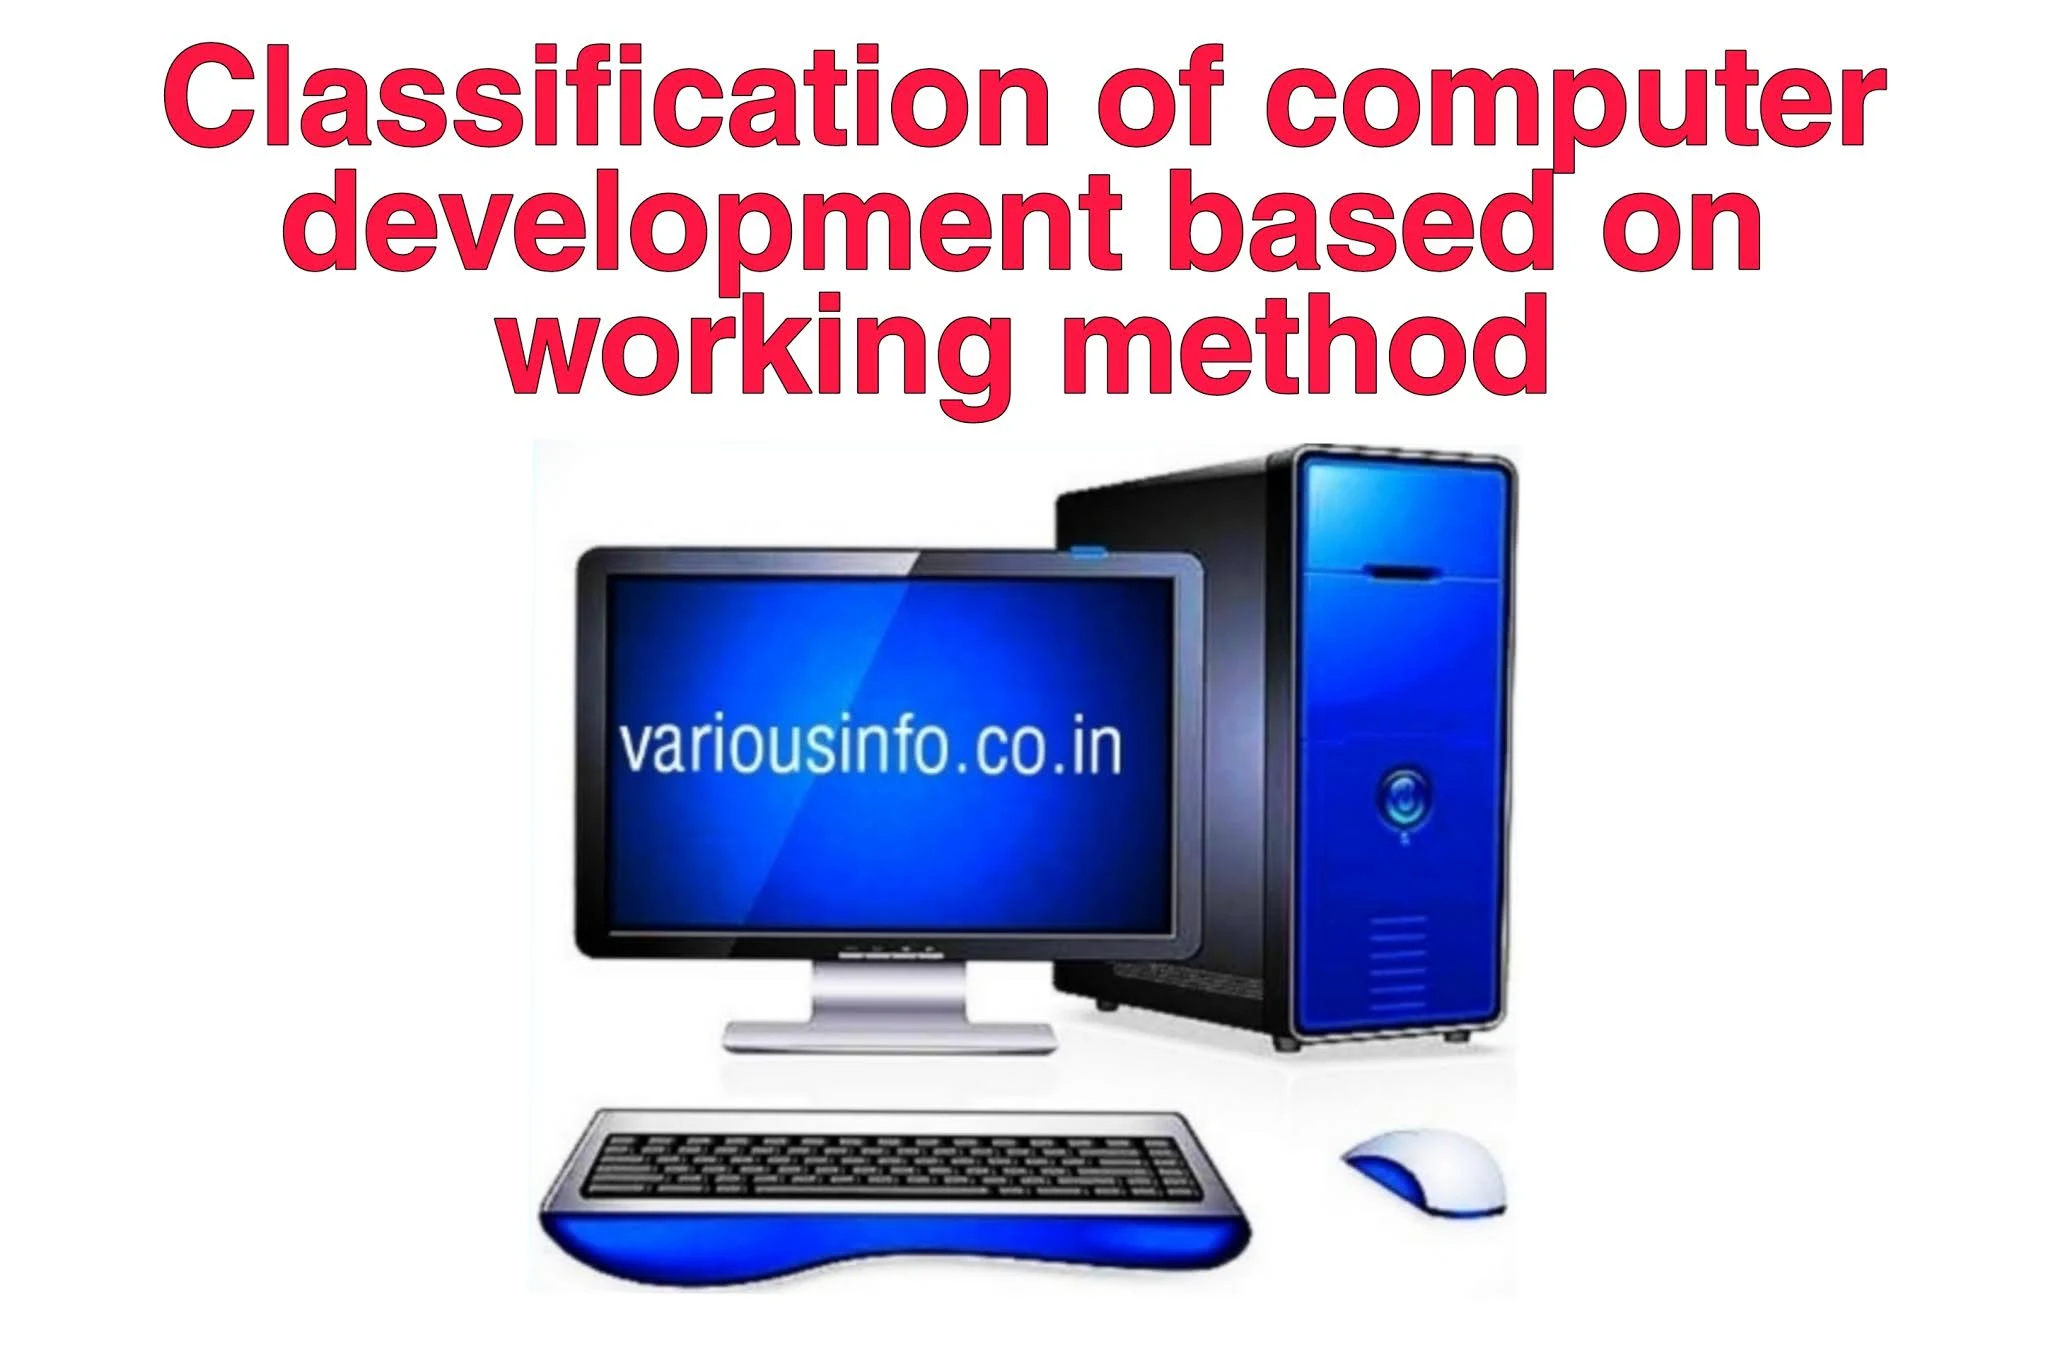 कार्य पद्धति के आधार पर कम्प्यूटर के विकास का वर्गीकरण ( Classification of computer development based on working method )